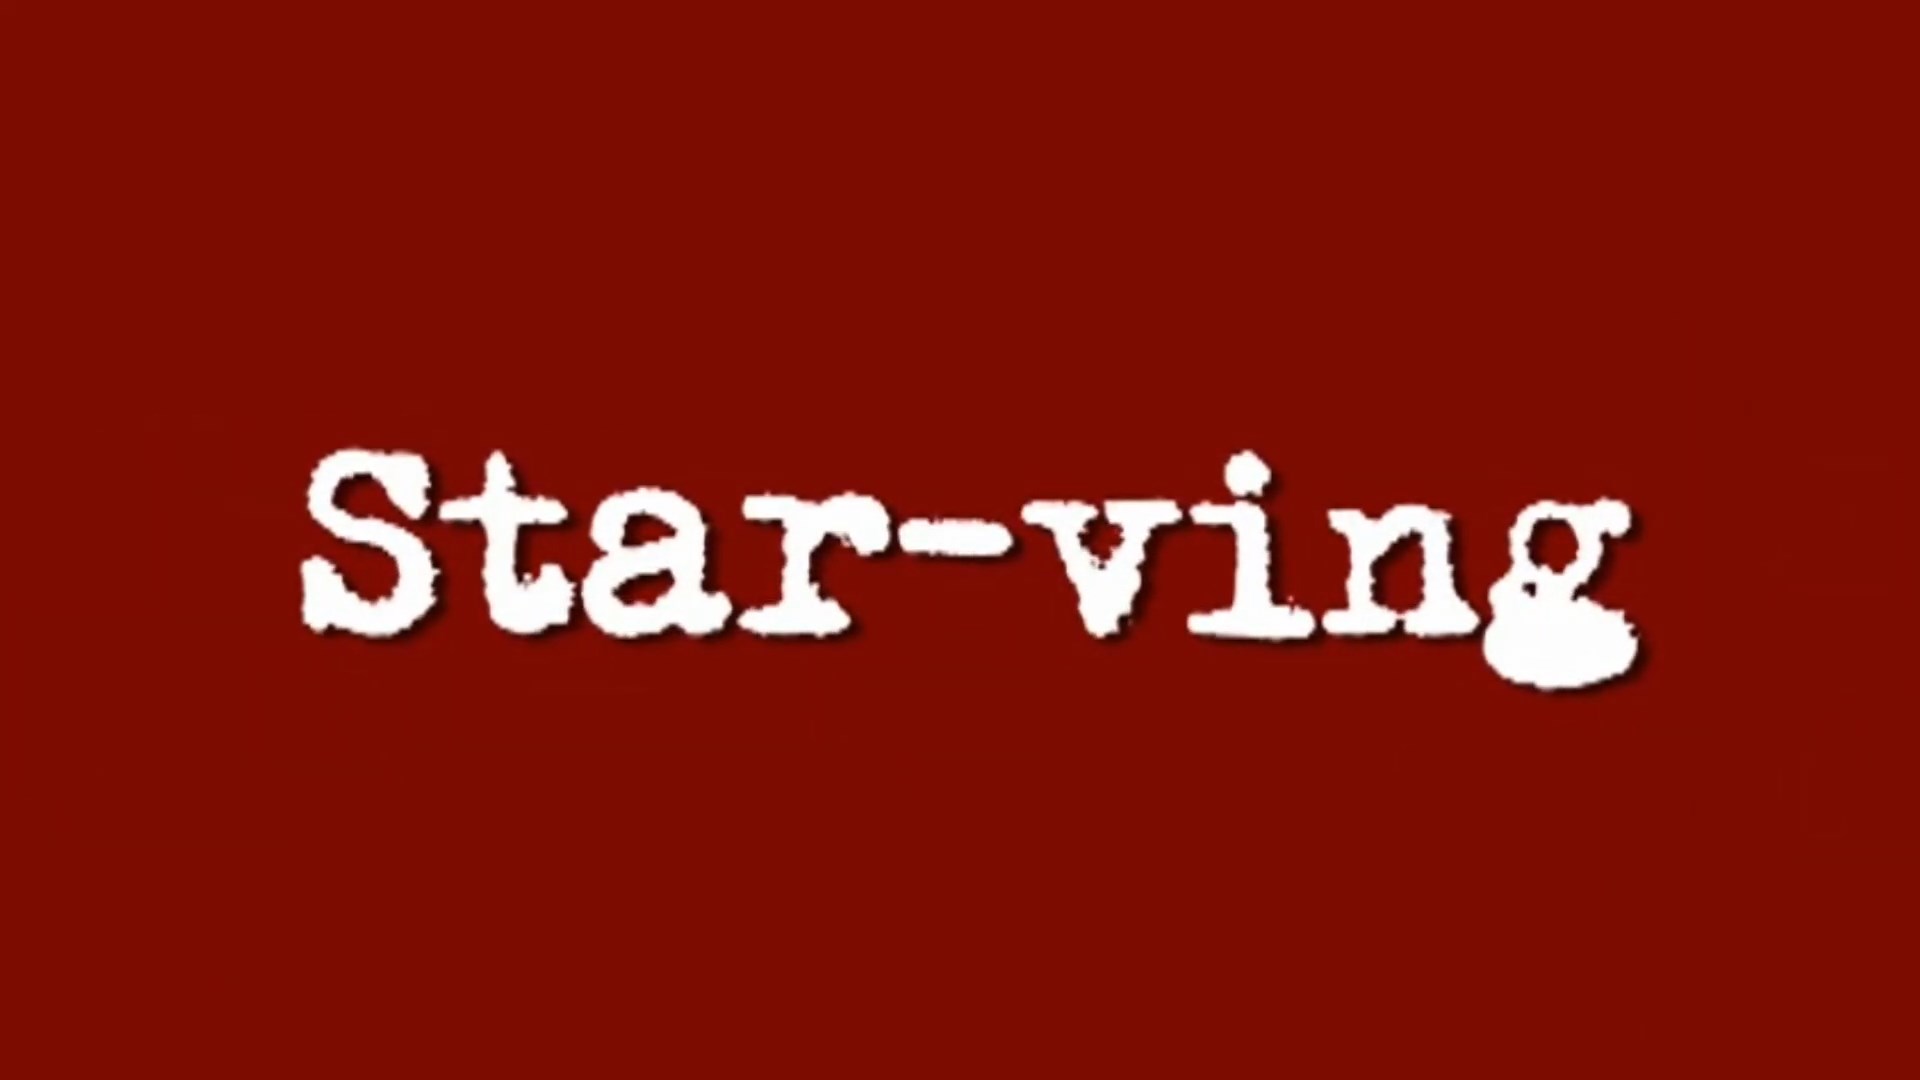 Star-ving-title.jpg